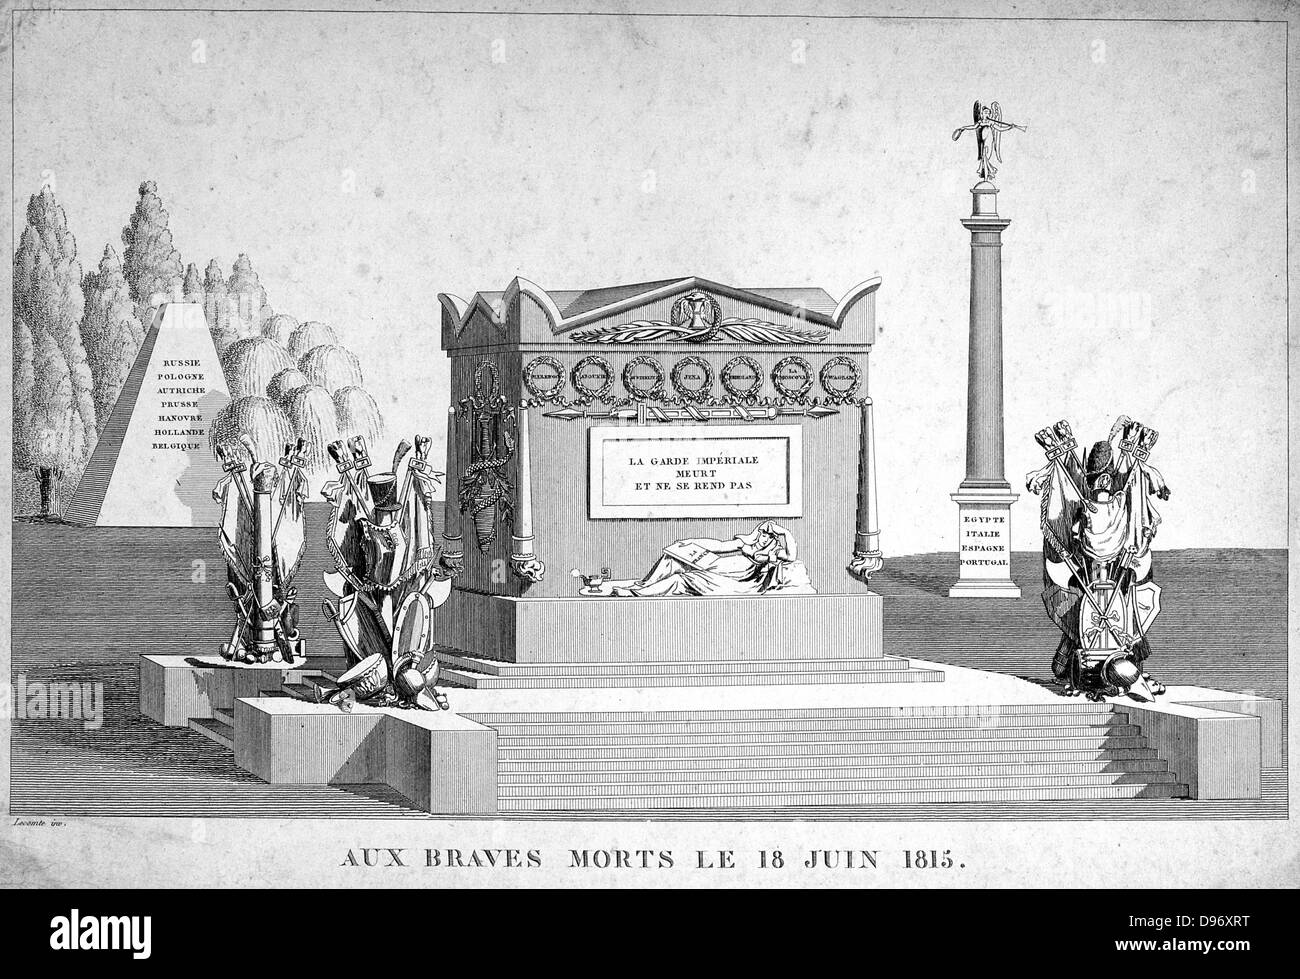 Impresión alegórico conmemorativo de la Guardia Imperial francesa y a todos aquellos que cayeron en 1815. Grabado. Foto de stock